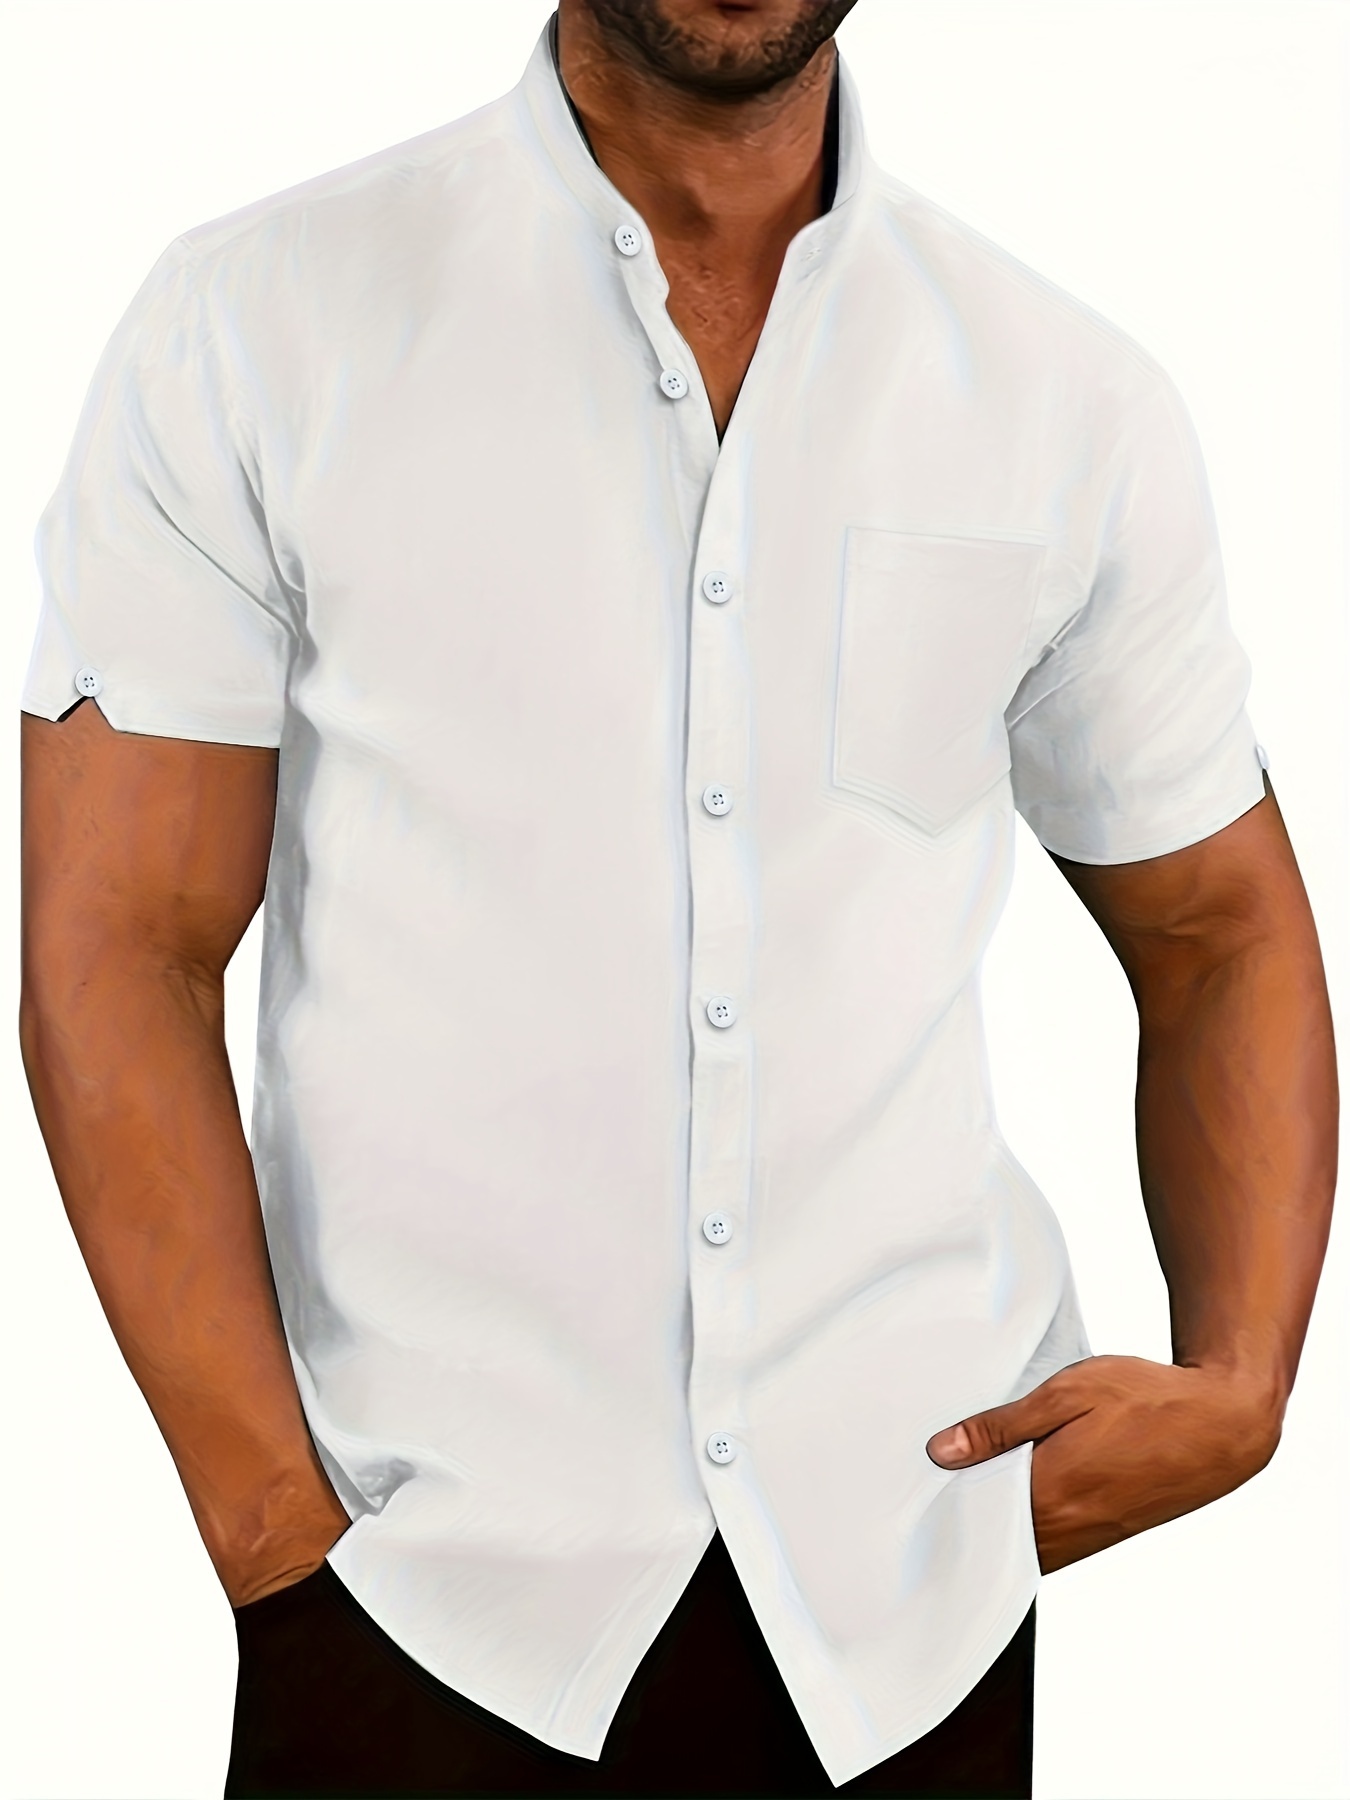 Camiseta a rayas blancas y negras para hombre, manga corta, cuello redondo,  camisetas novedosas, Blanco